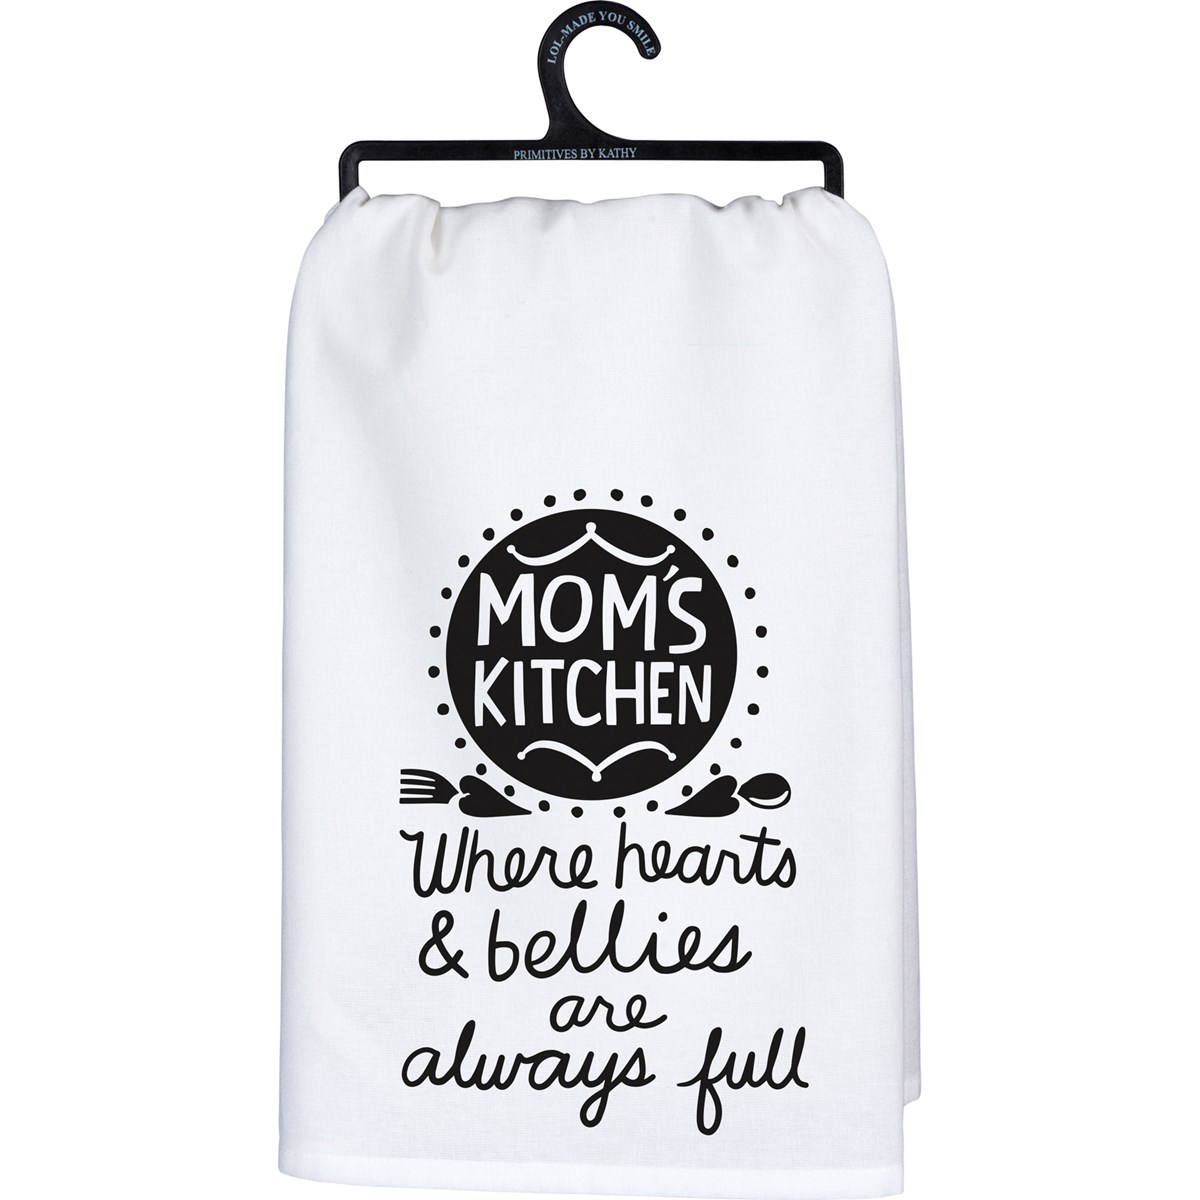 Mom's Kitchen Kitchen Towel - Cotton